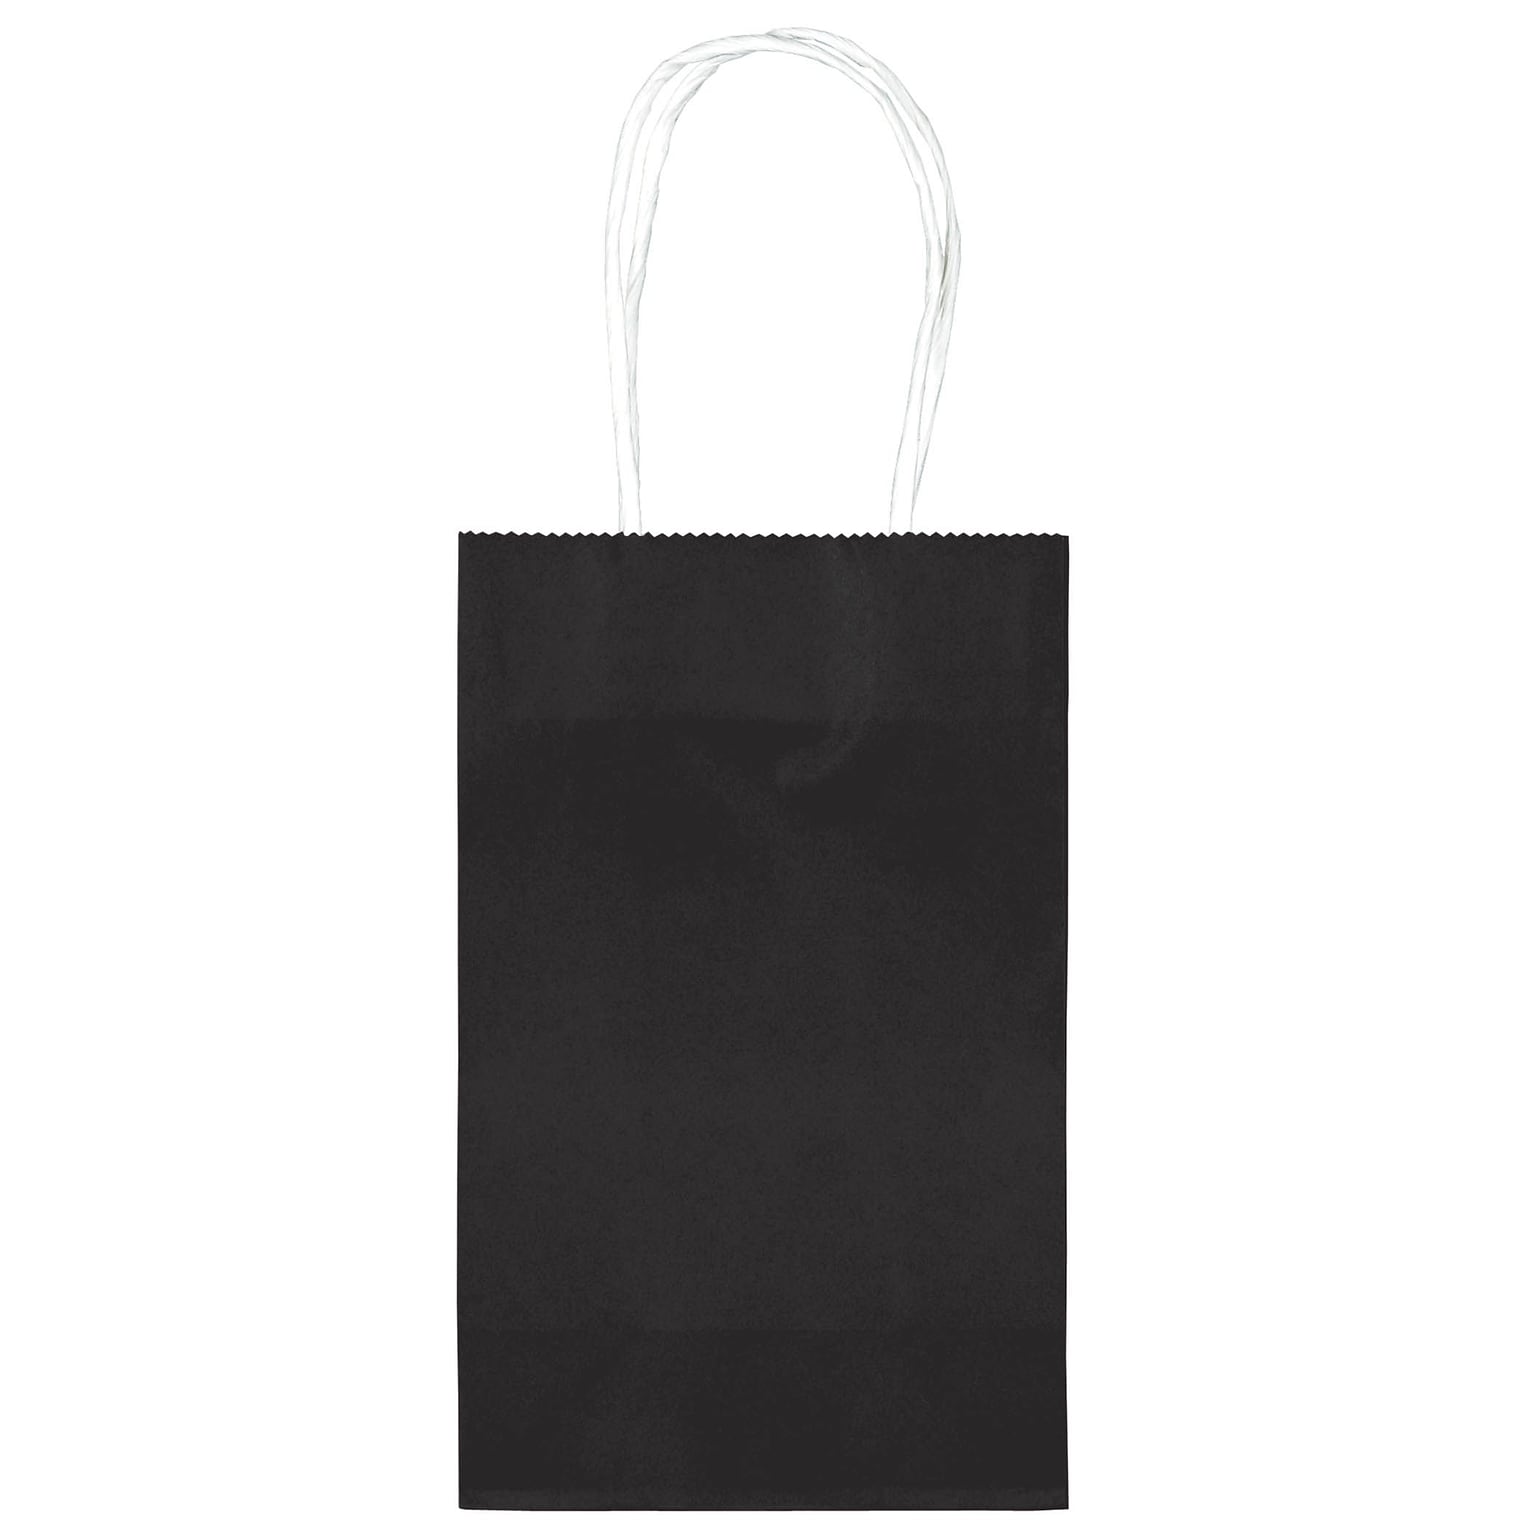 Amscan Kraft Paper Bag, 8.25 x 5.25, Black, 4/Pack, 10 Bags/Pack (162500.10)